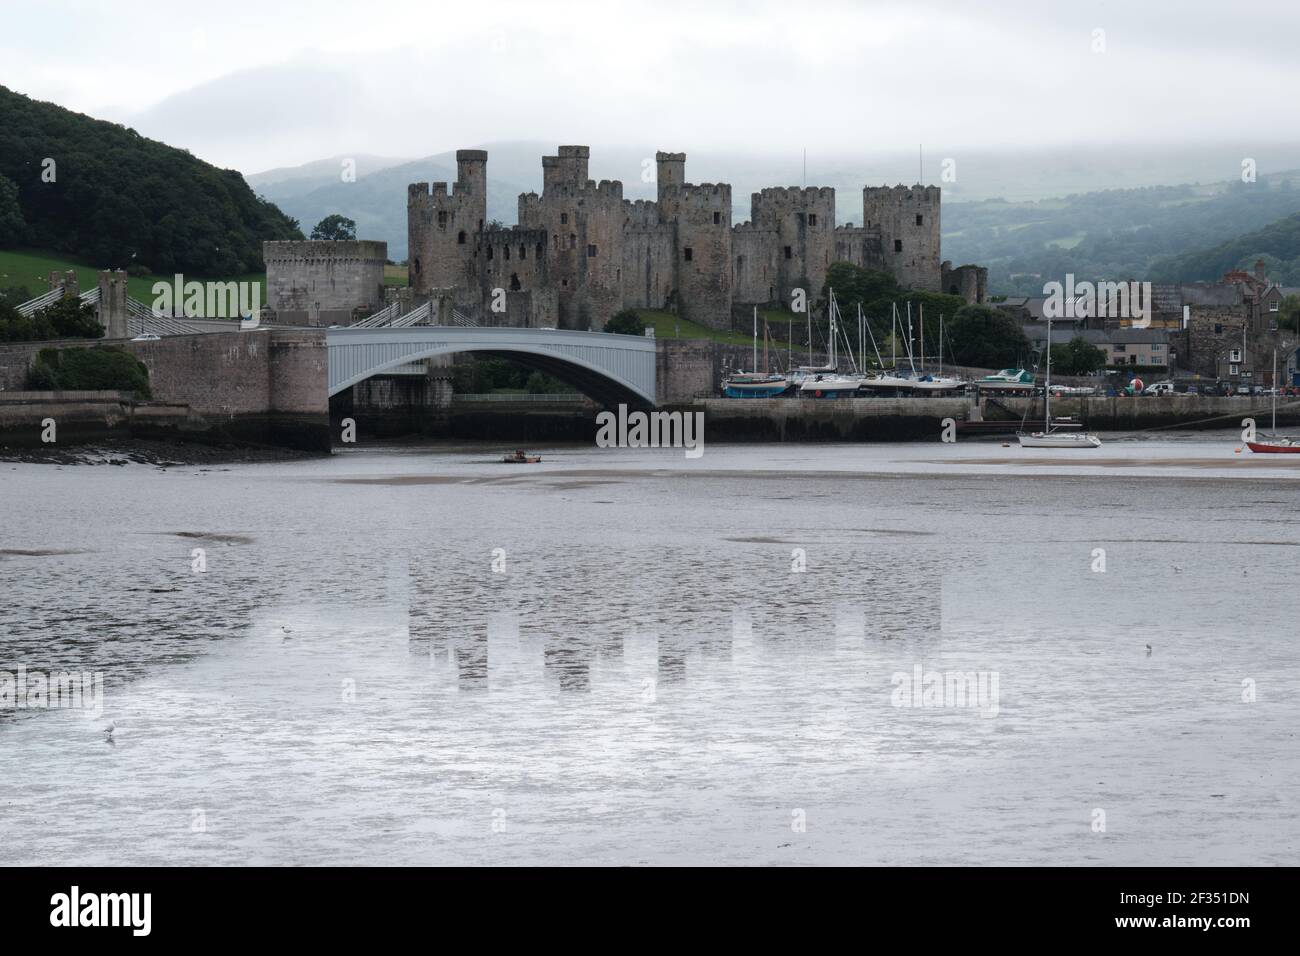 La forme de couvaison du château de Conway, au nord du pays de Galles, sort de la brume pour protéger le passage de la rivière. Banque D'Images